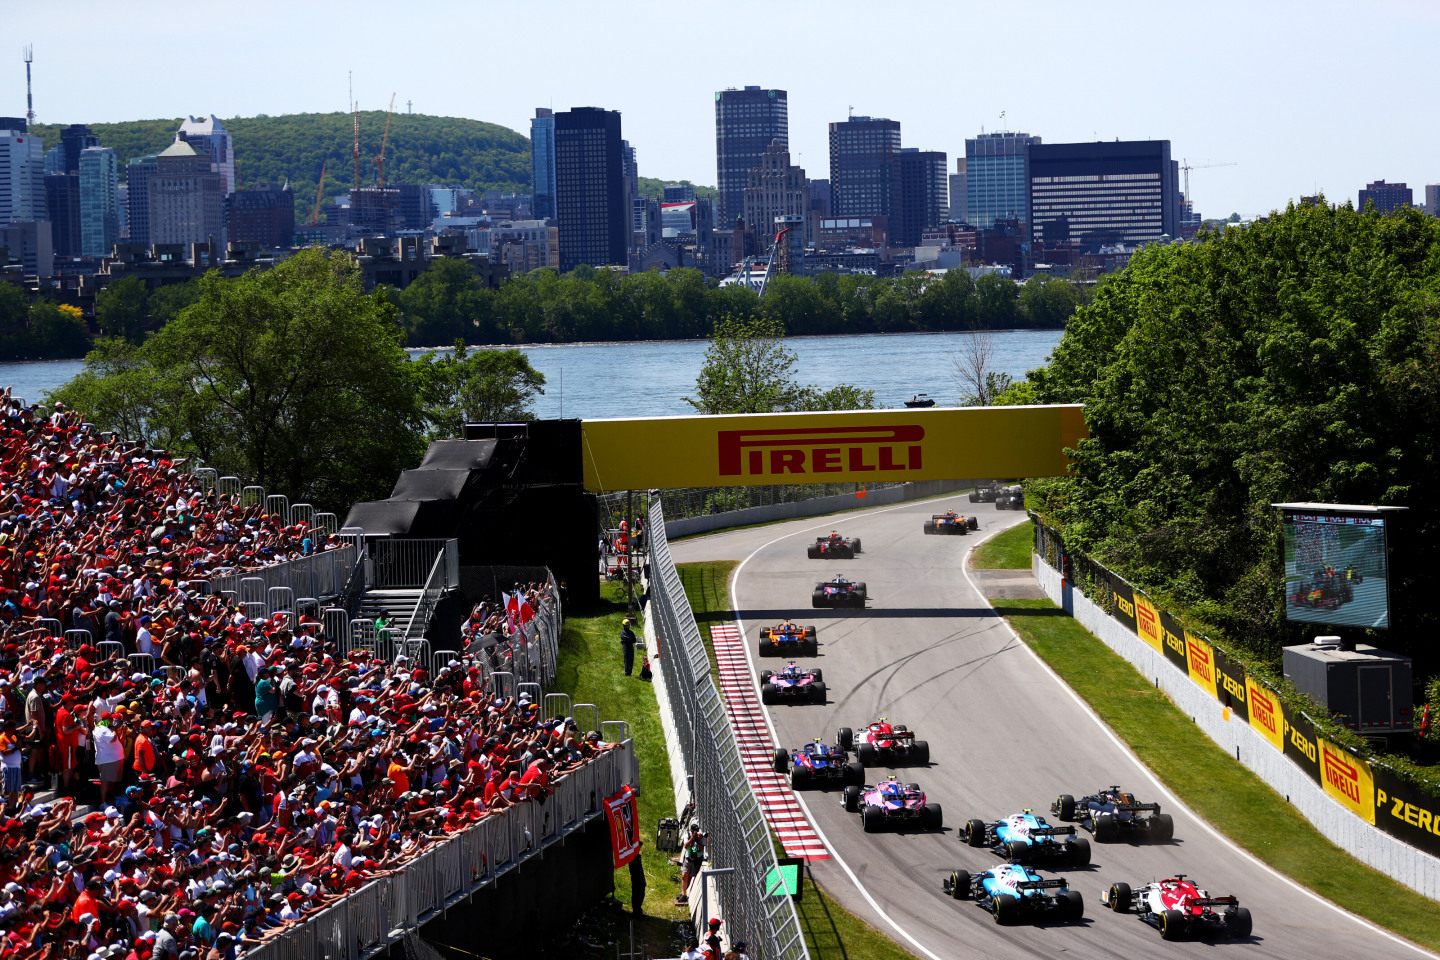 Формула 1 возвращается в Монреаль после вынужденной двухлетней паузы © Red Bull Content Pool / Getty Images